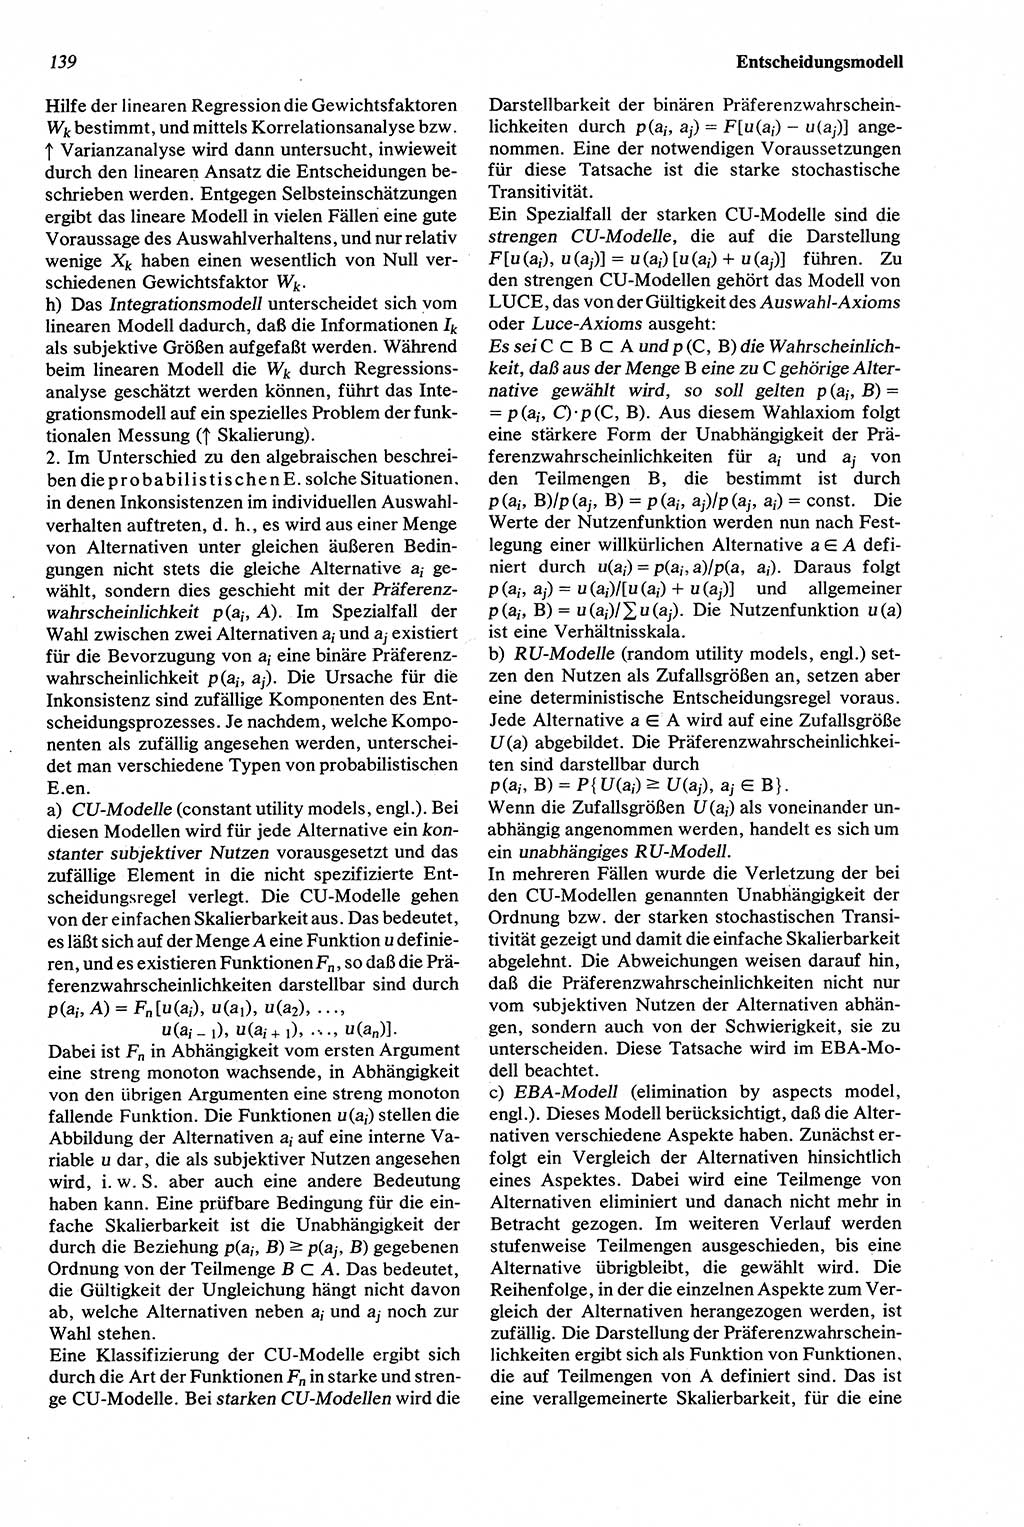 Wörterbuch der Psychologie [Deutsche Demokratische Republik (DDR)] 1976, Seite 139 (Wb. Psych. DDR 1976, S. 139)